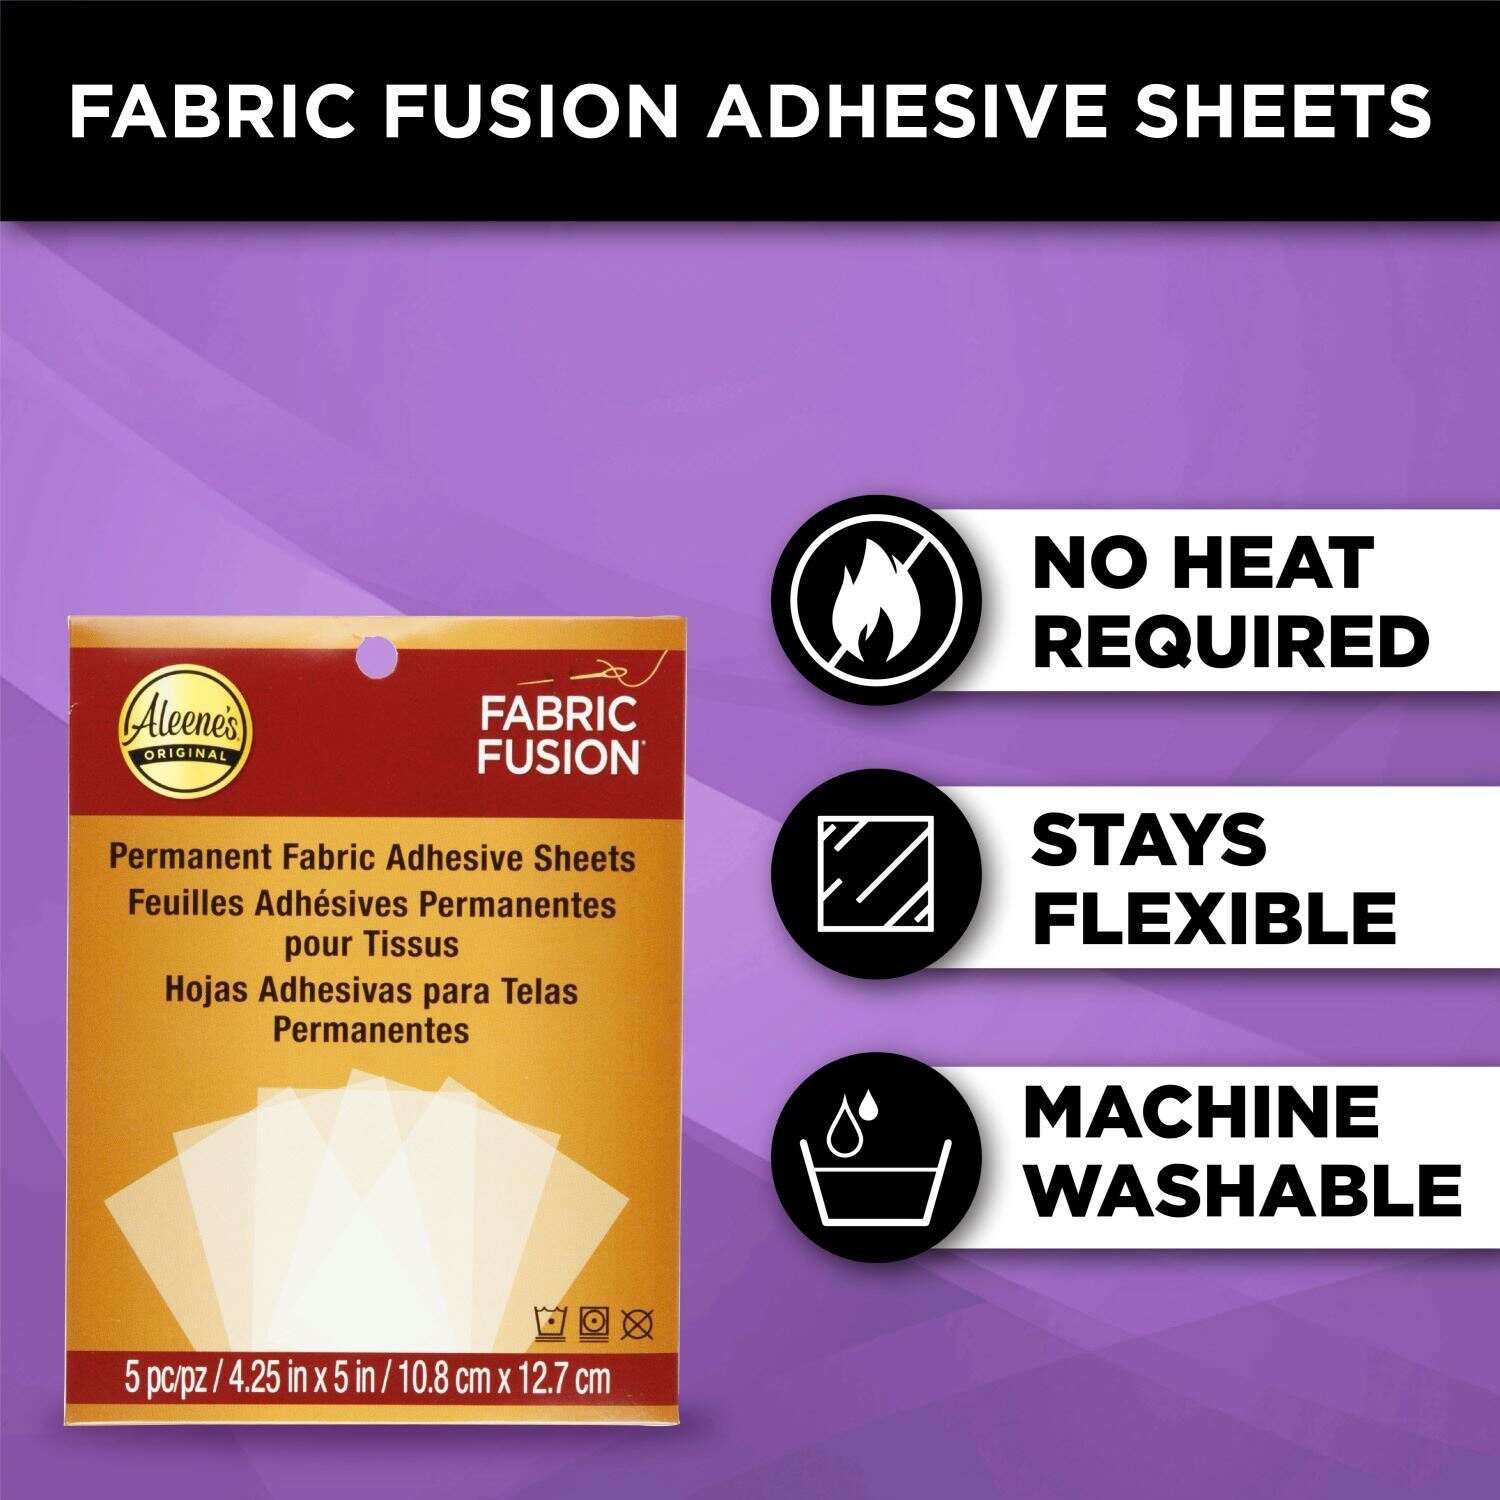 Fabric Fusion Pen – Benzie Design